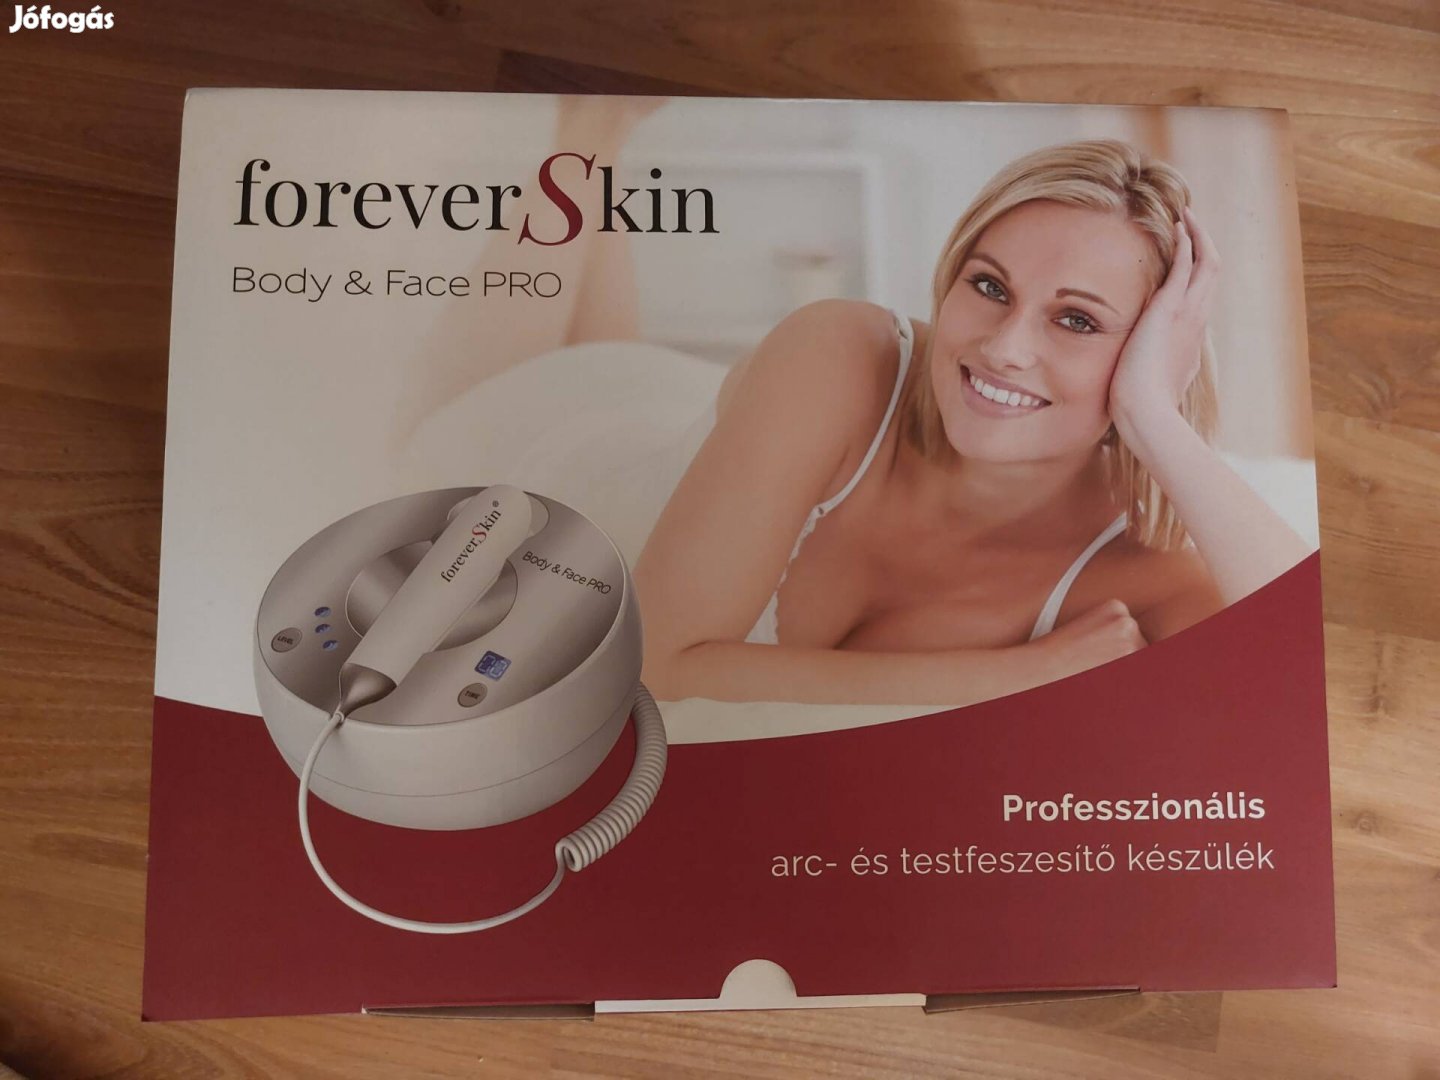 Forever Skin ránctalanító bőrfeszesítő készülék + aktivátor gél